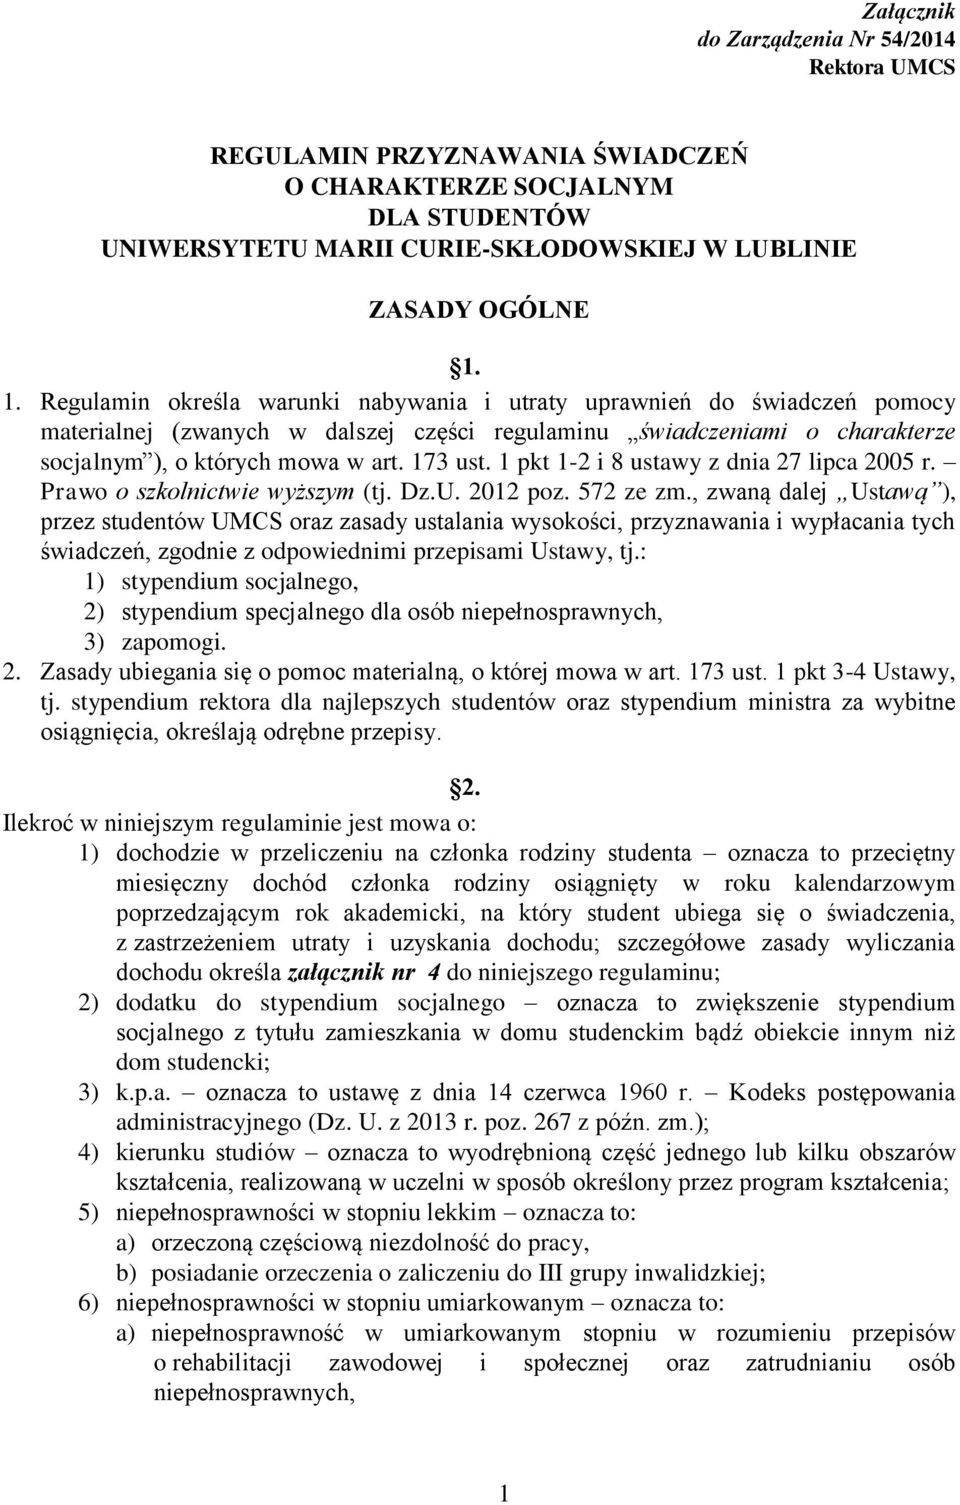 1 pkt 1-2 i 8 ustawy z dnia 27 lipca 2005 r. Prawo o szkolnictwie wyższym (tj. Dz.U. 2012 poz. 572 ze zm.